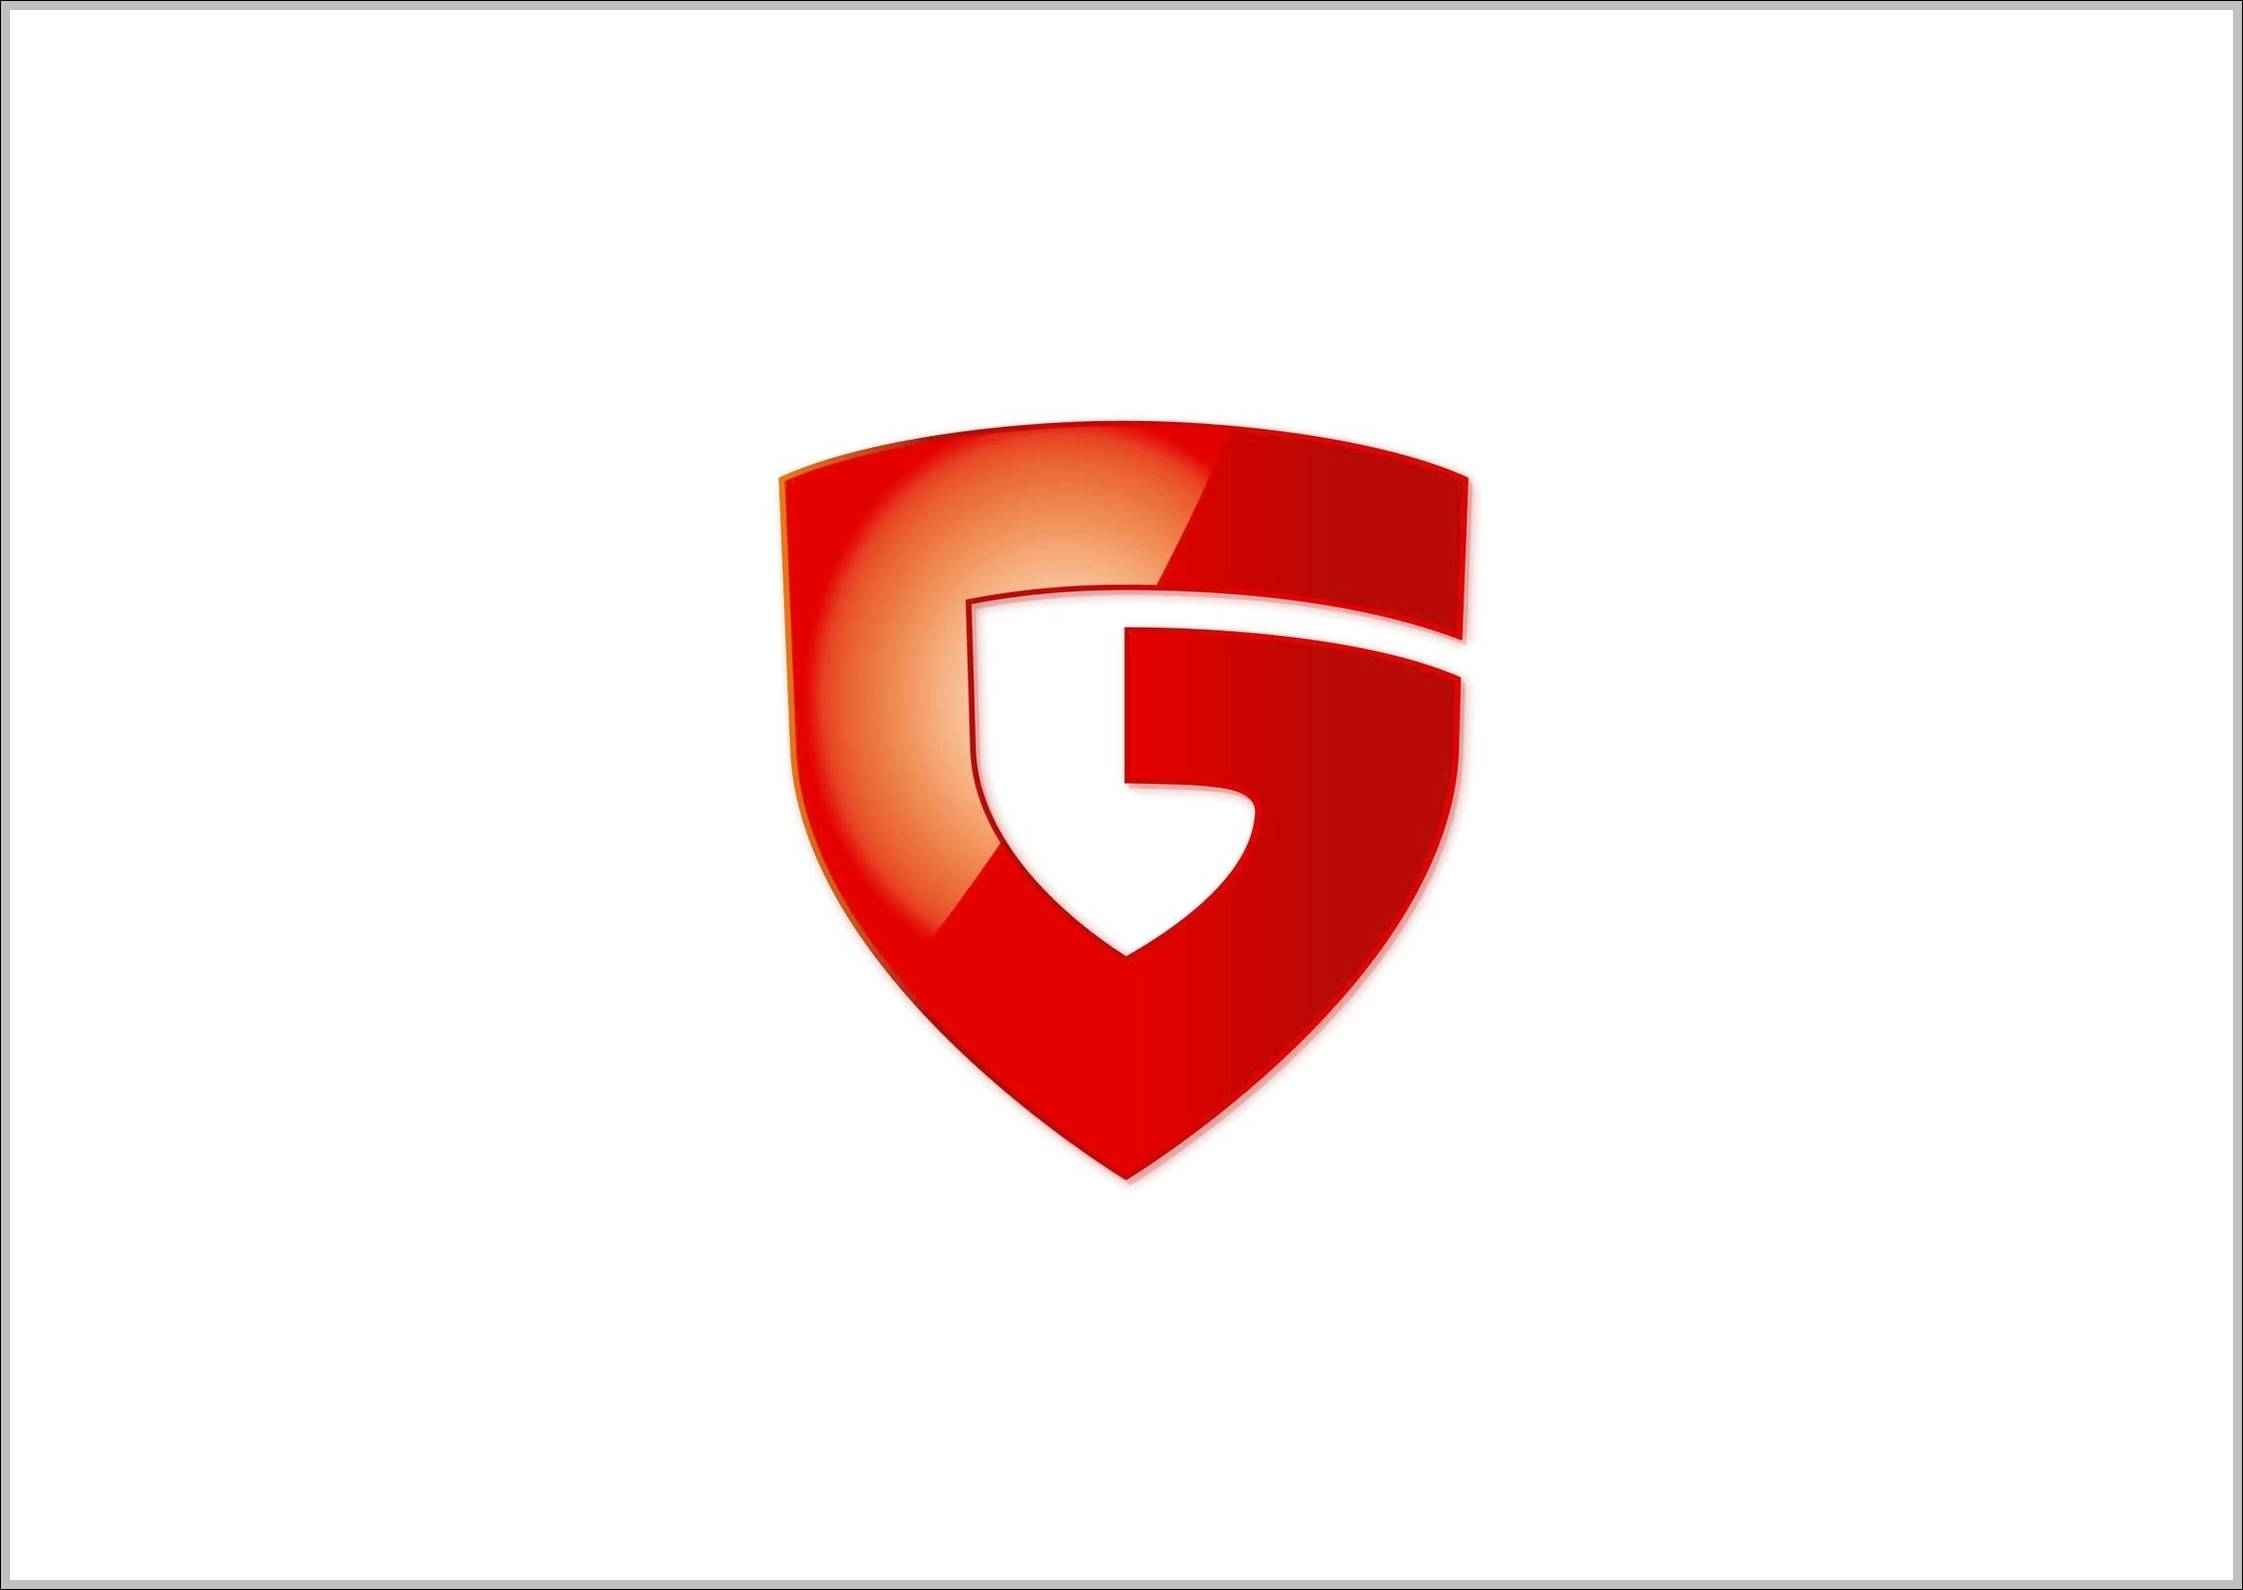 G Data logo